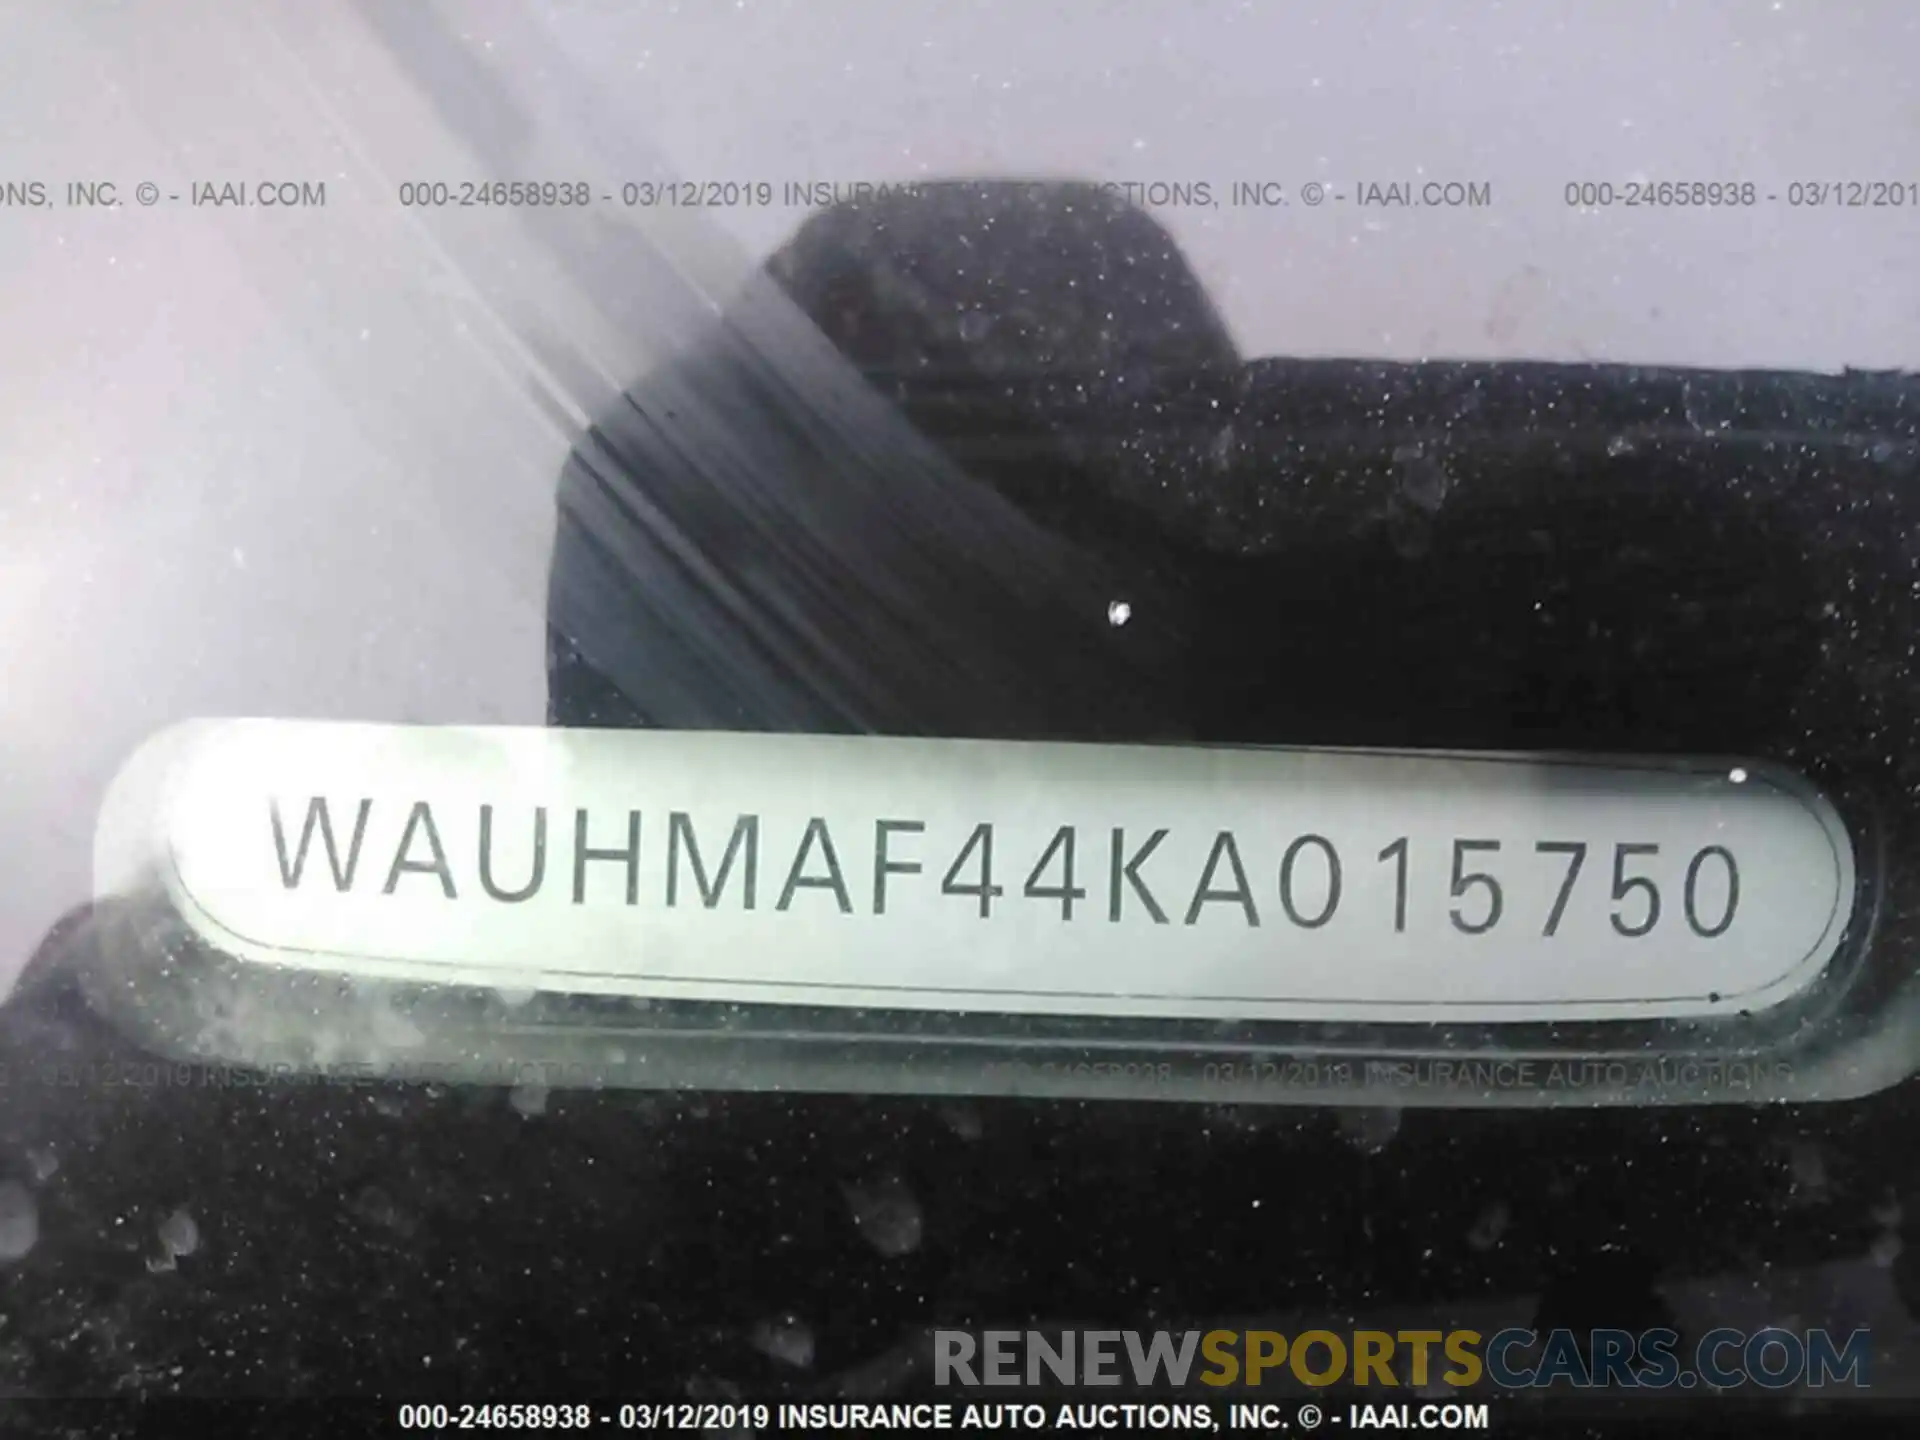 9 Photograph of a damaged car WAUHMAF44KA015750 AUDI A4 2019